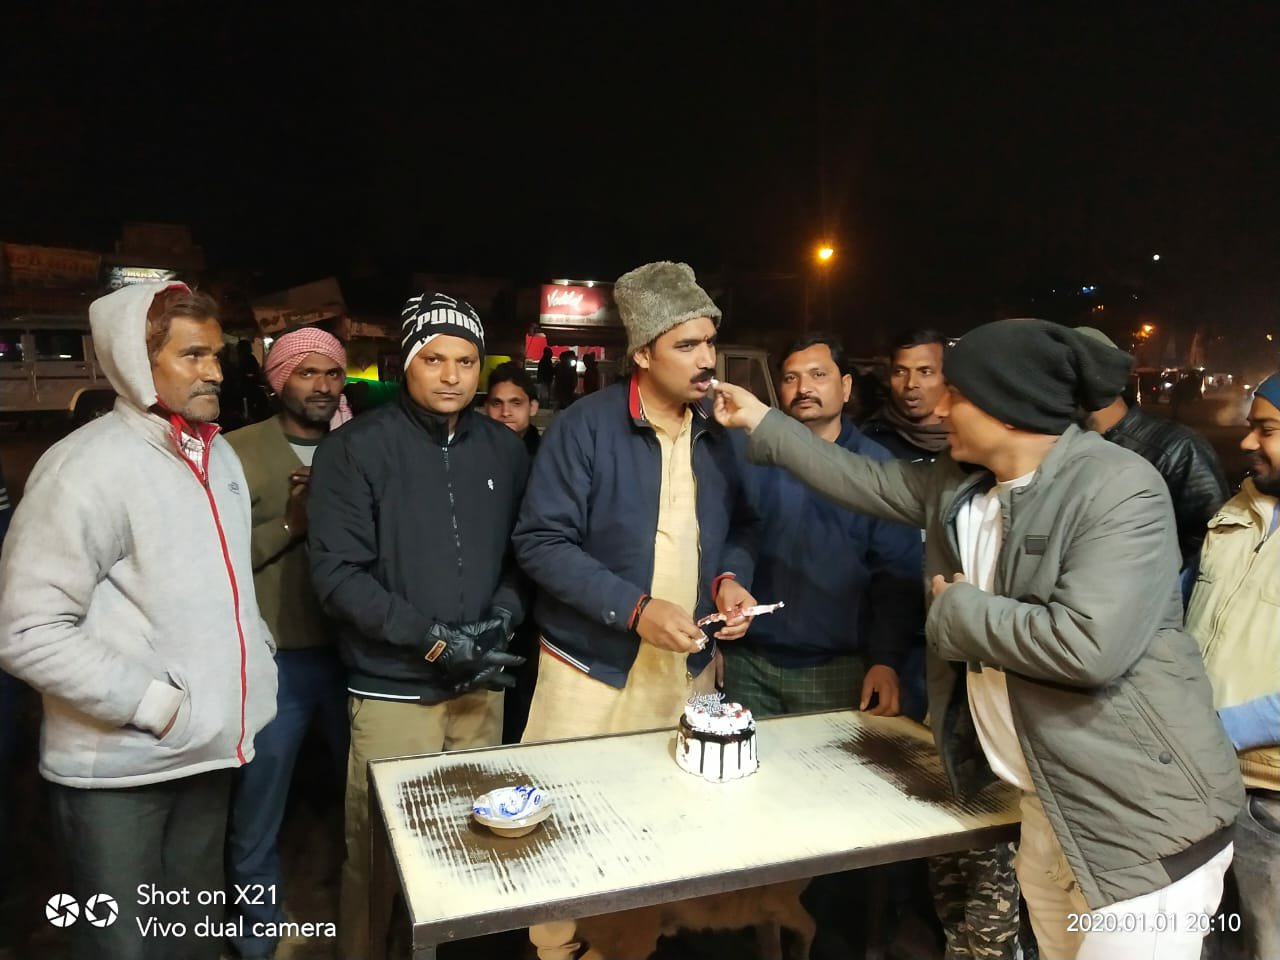 सत्येन्द्र शर्मा ने केक काटकर मनाया ज्योतिरादित्य सिंधिया का जन्मदिन | New India Times